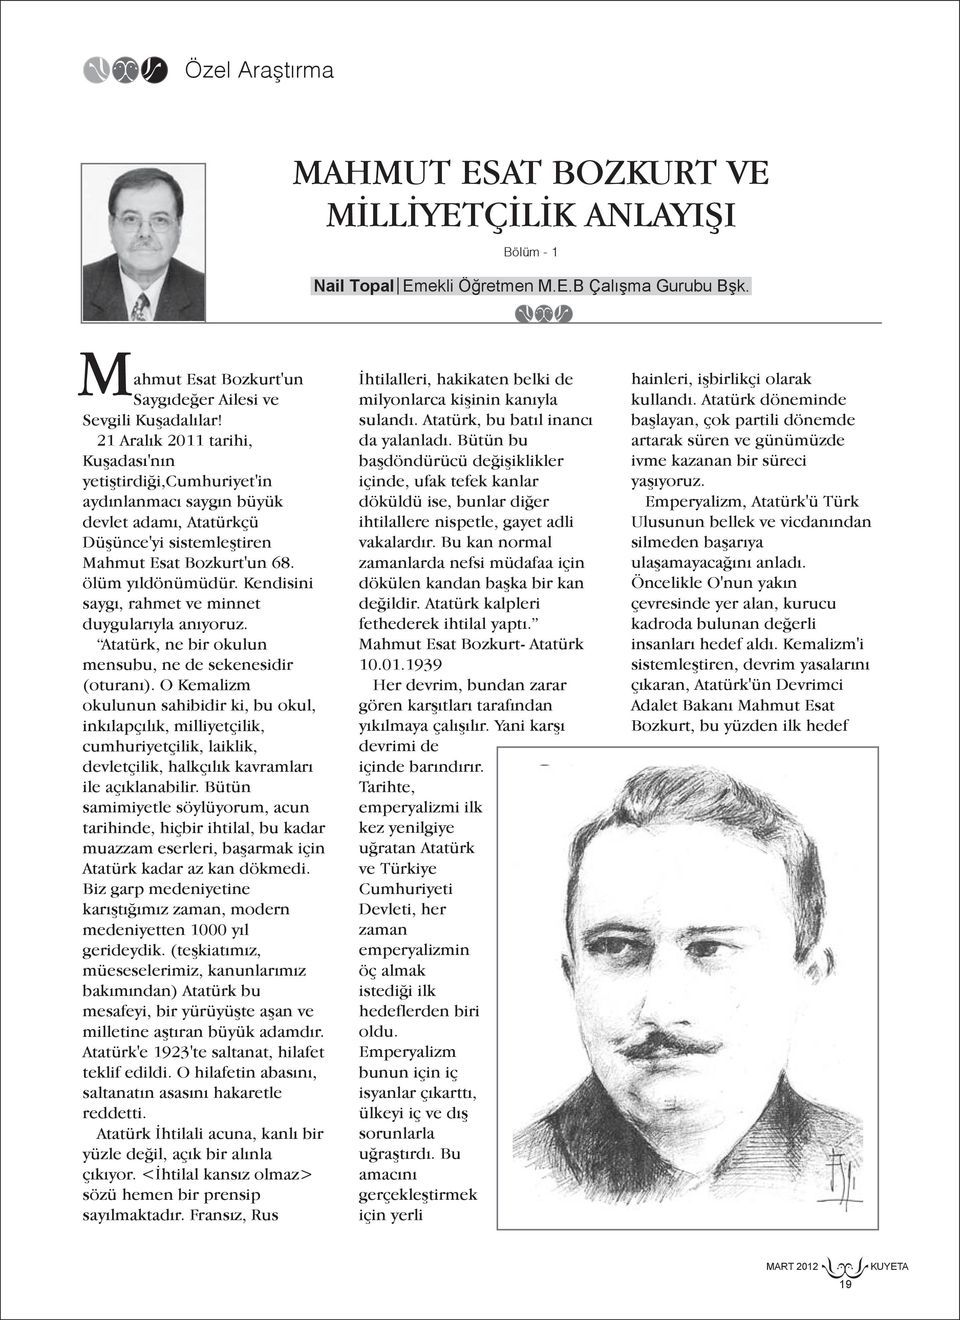 Kendisini saygı, rahmet ve minnet duygularıyla anıyoruz. Atatürk, ne bir okulun mensubu, ne de sekenesidir (oturanı).